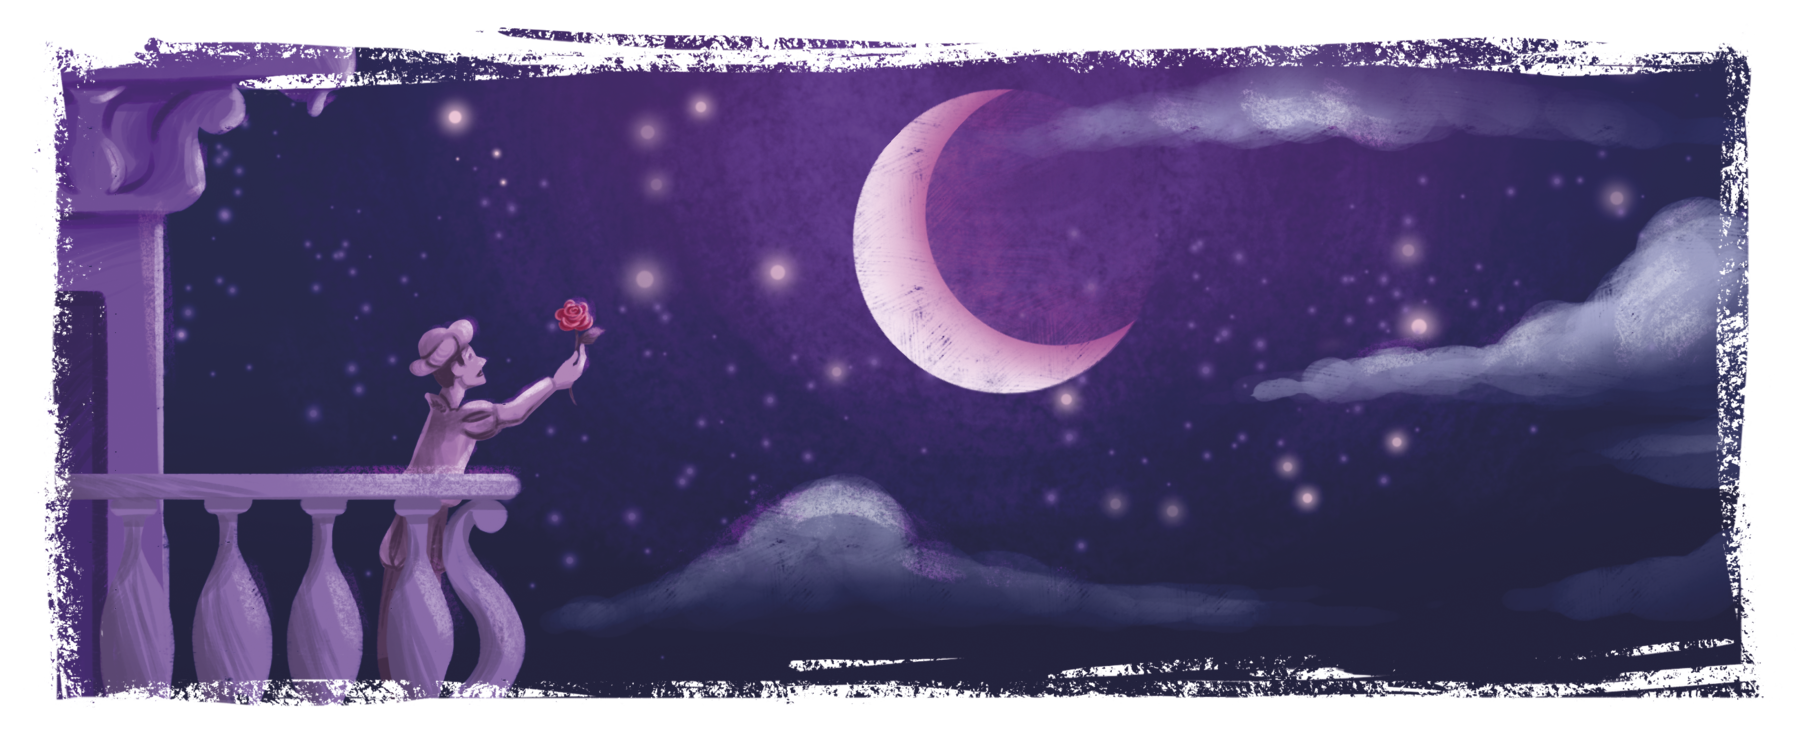 Ilustração. À esquerda, homem em uma varanda. Ele usa chapéu e está com o braço direito estendido para cima, com uma rosa vermelha na mão. À direita, uma grande lua crescente cercada de estrelas e com algumas nuvens parcialmente iluminadas pelo luar.